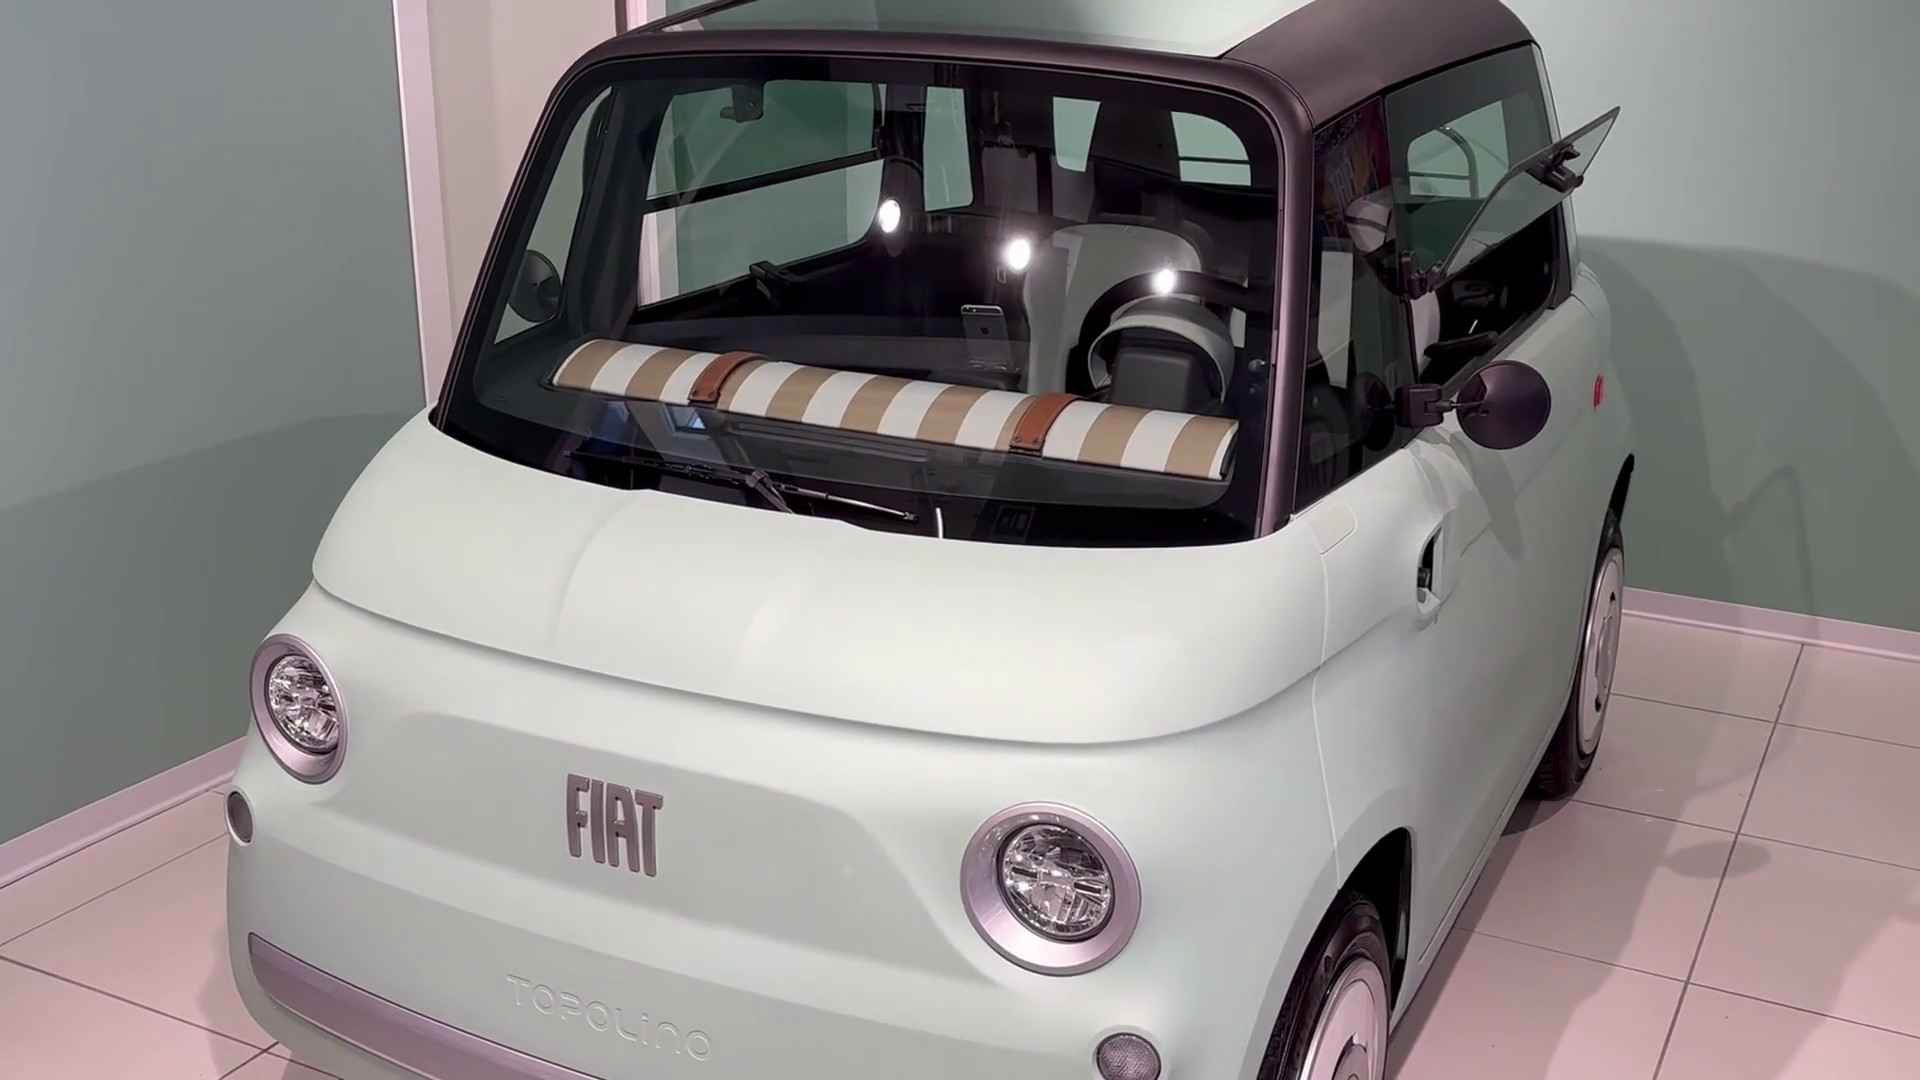 Fiat Topolino e Unieuro, partnership per la mobilità sostenibile